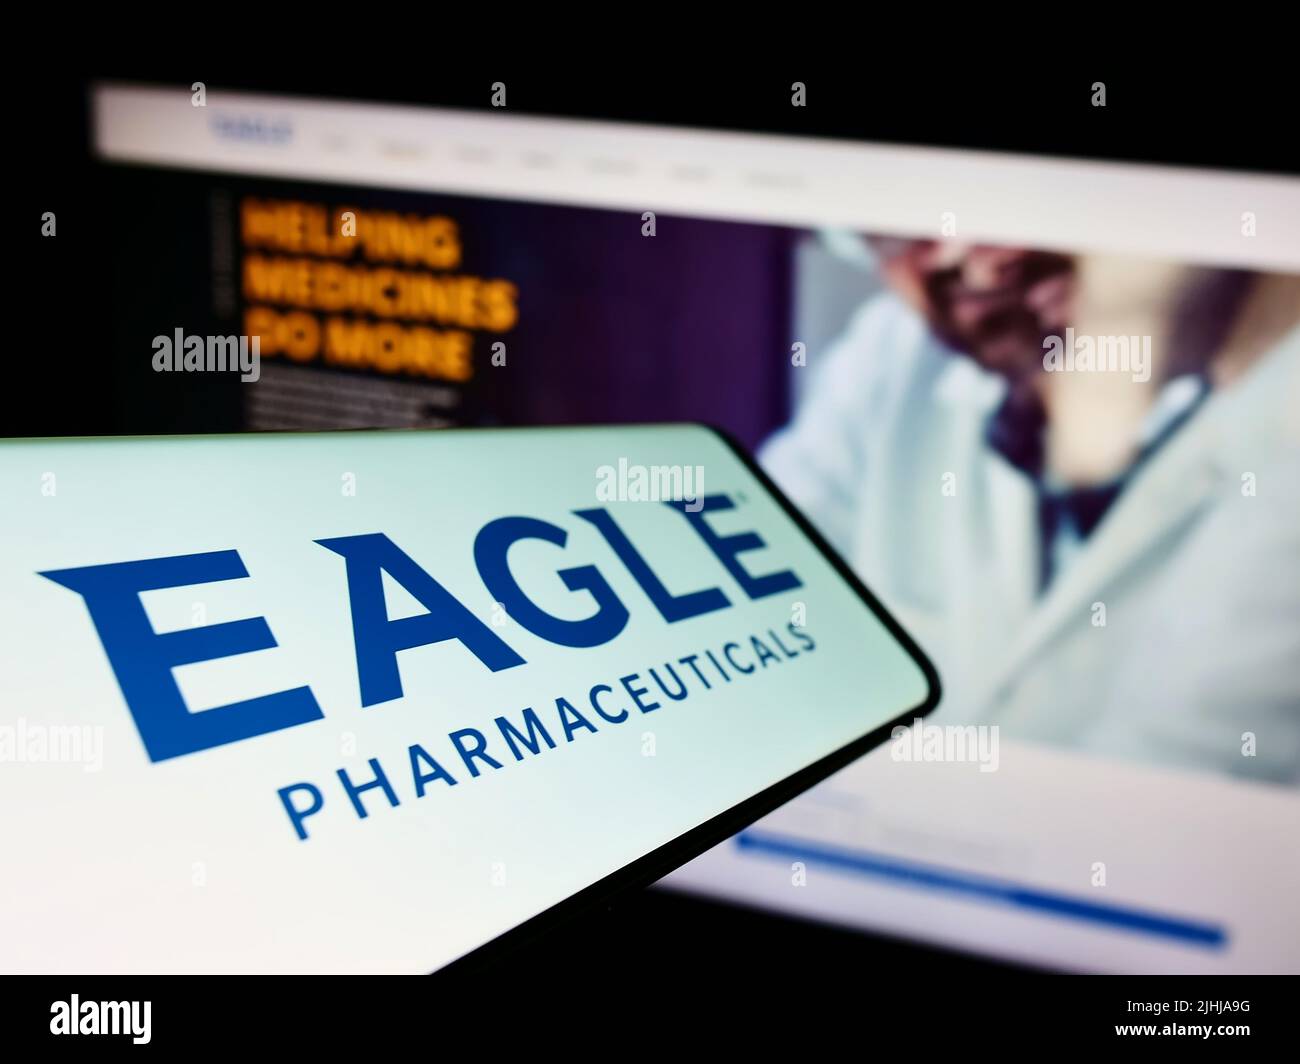 Cellulare con logo della società americana Eagle Pharmaceuticals Inc. Sullo schermo di fronte al sito web aziendale. Messa a fuoco al centro-sinistra del display del telefono. Foto Stock